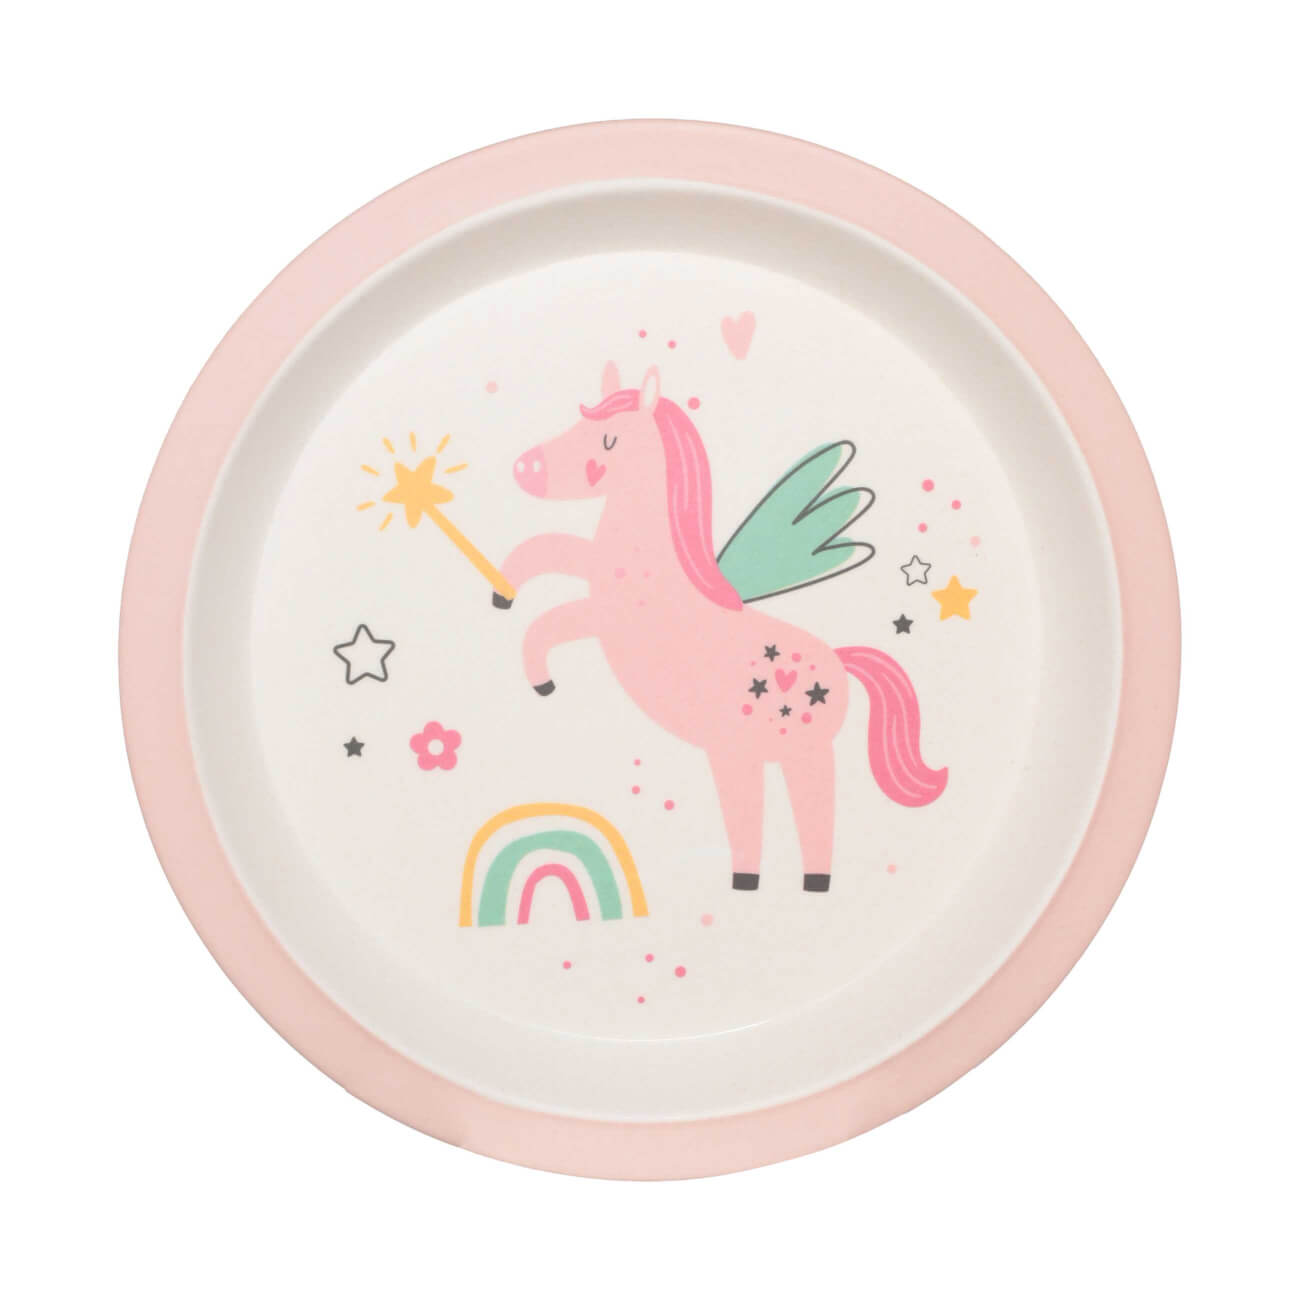 Тарелка закусочная, детская, 21 см, бамбук, розовая, Единорог и радуга, Unicorn тарелка обеденная детская 18 см 3 отд бамбук квадратная розово мятная единорог unicorn